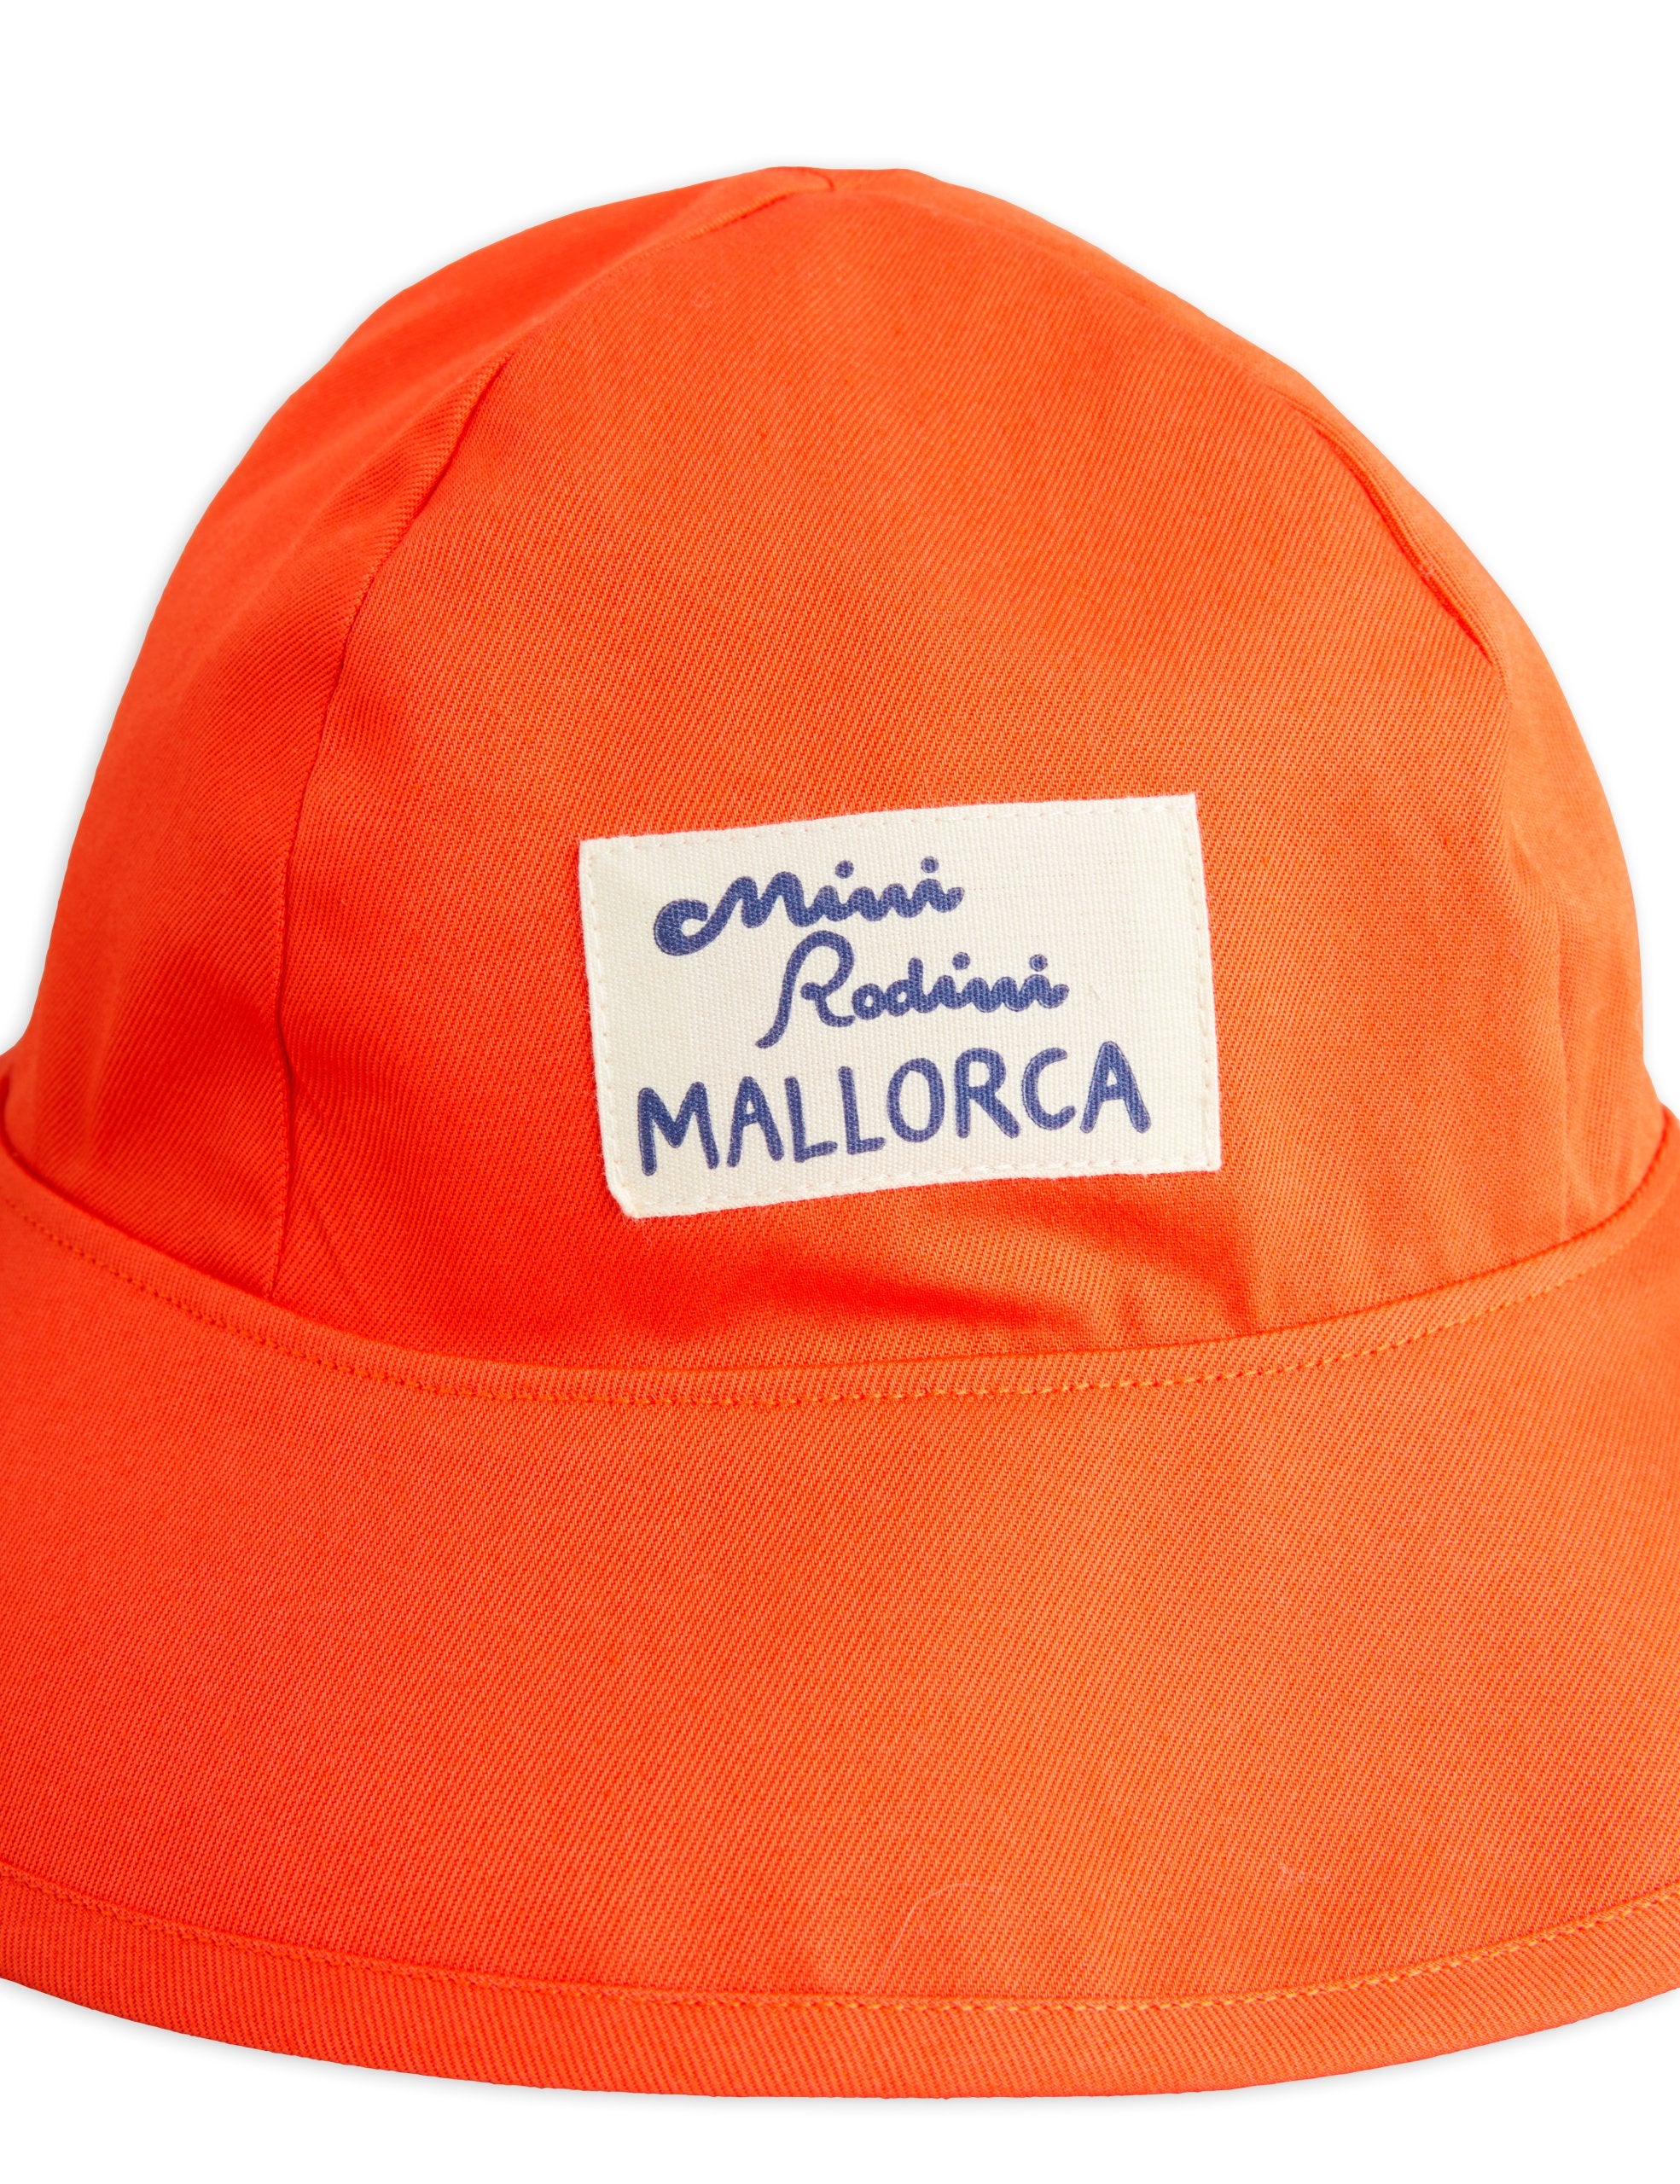 Mini Rodini | Mallorca patch sun hat